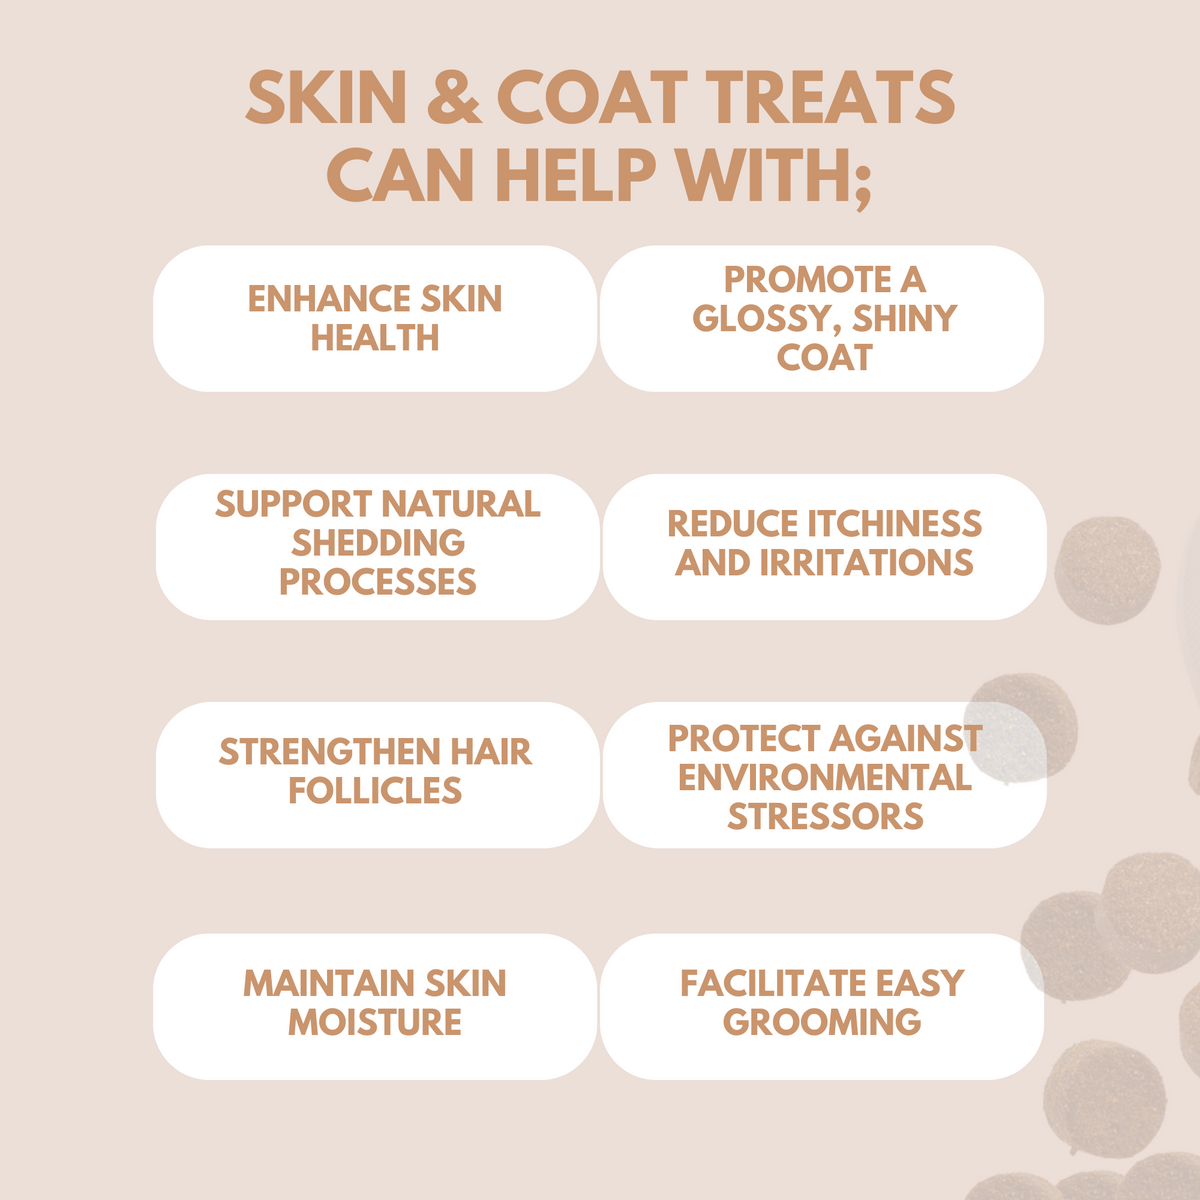 Skin & Coat Treats